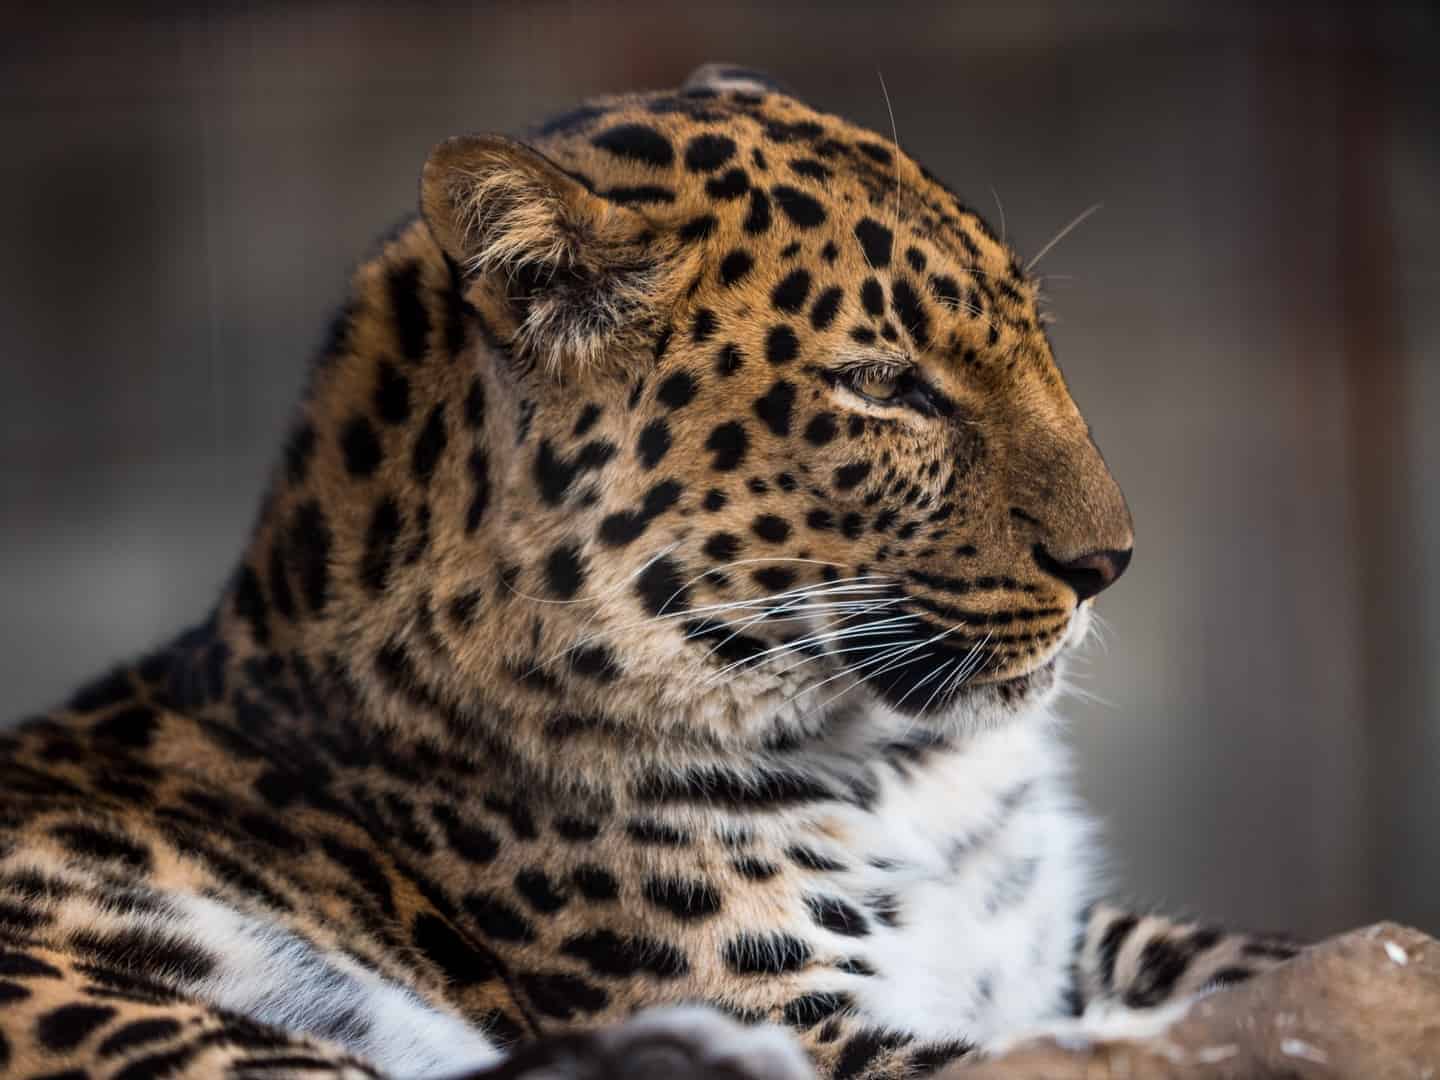 Closeup of a Leopard